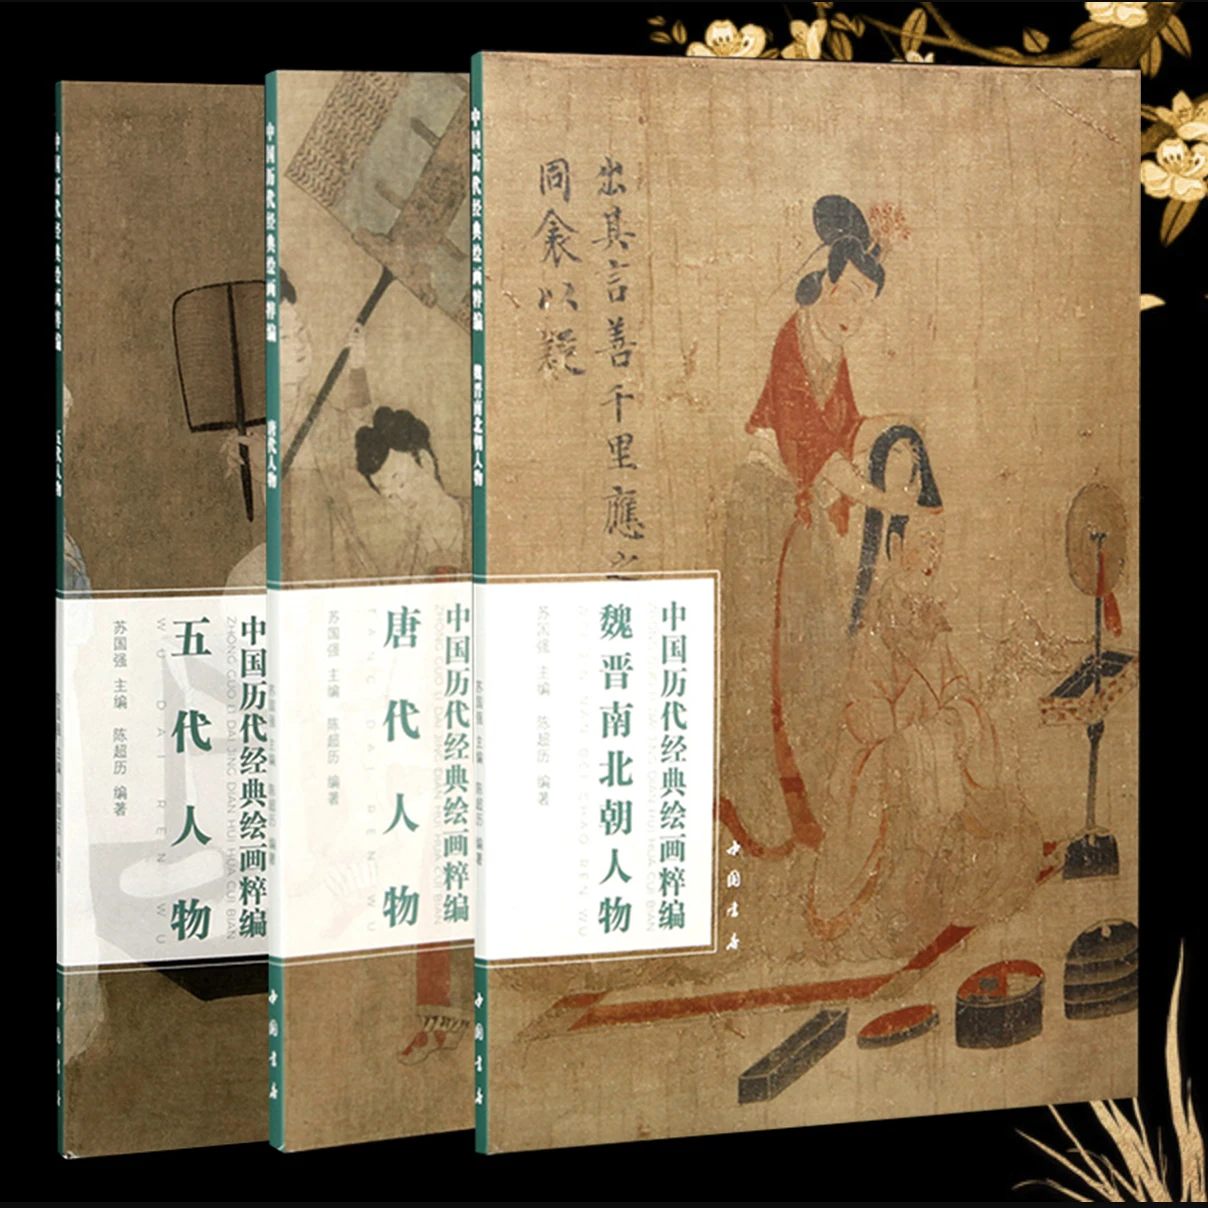 figuras-de-wei-para-northern-chao-tang-dai-cinco-dinastias-uma-colecao-de-pinturas-chinesas-classicas-series-livro-de-arte